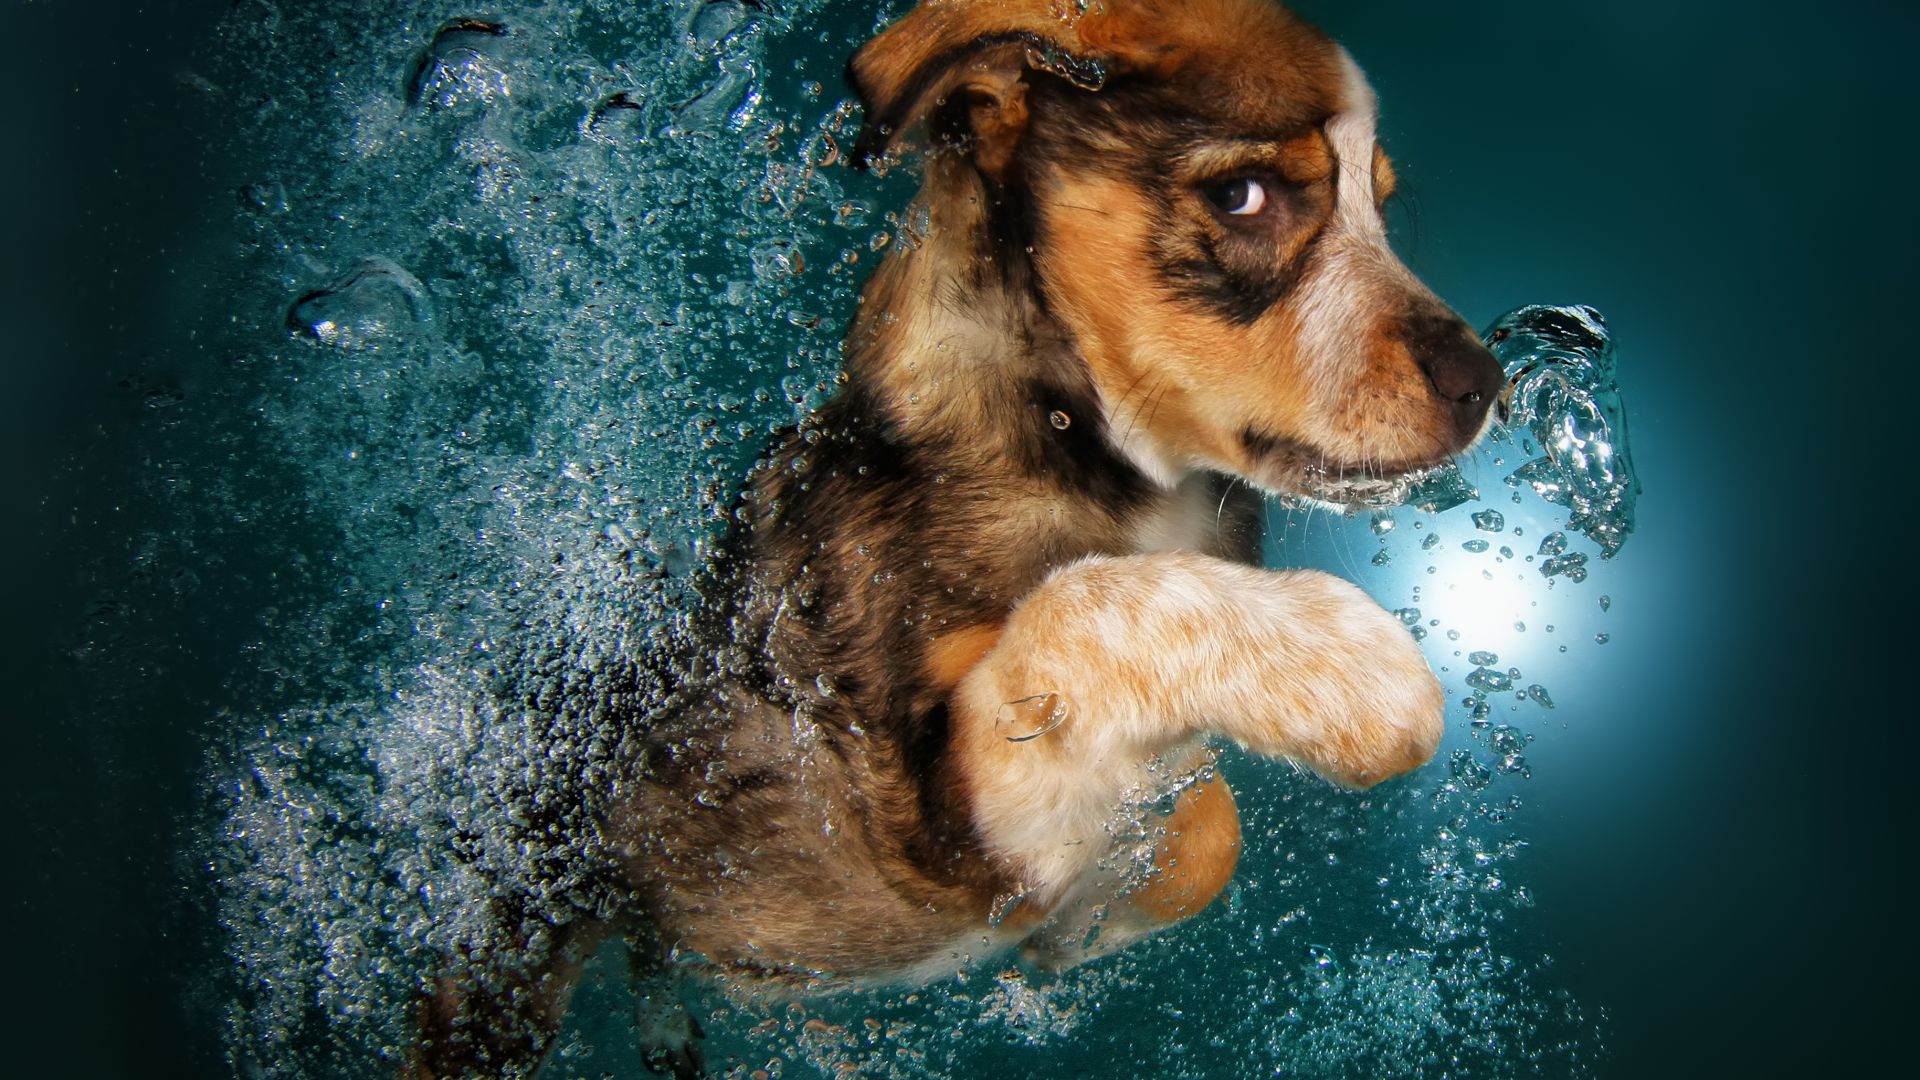 Бордер-колли, собака, под водой, милые животные, забавный, Border Collie, dog, underwater, cute animals, funny (horizontal)